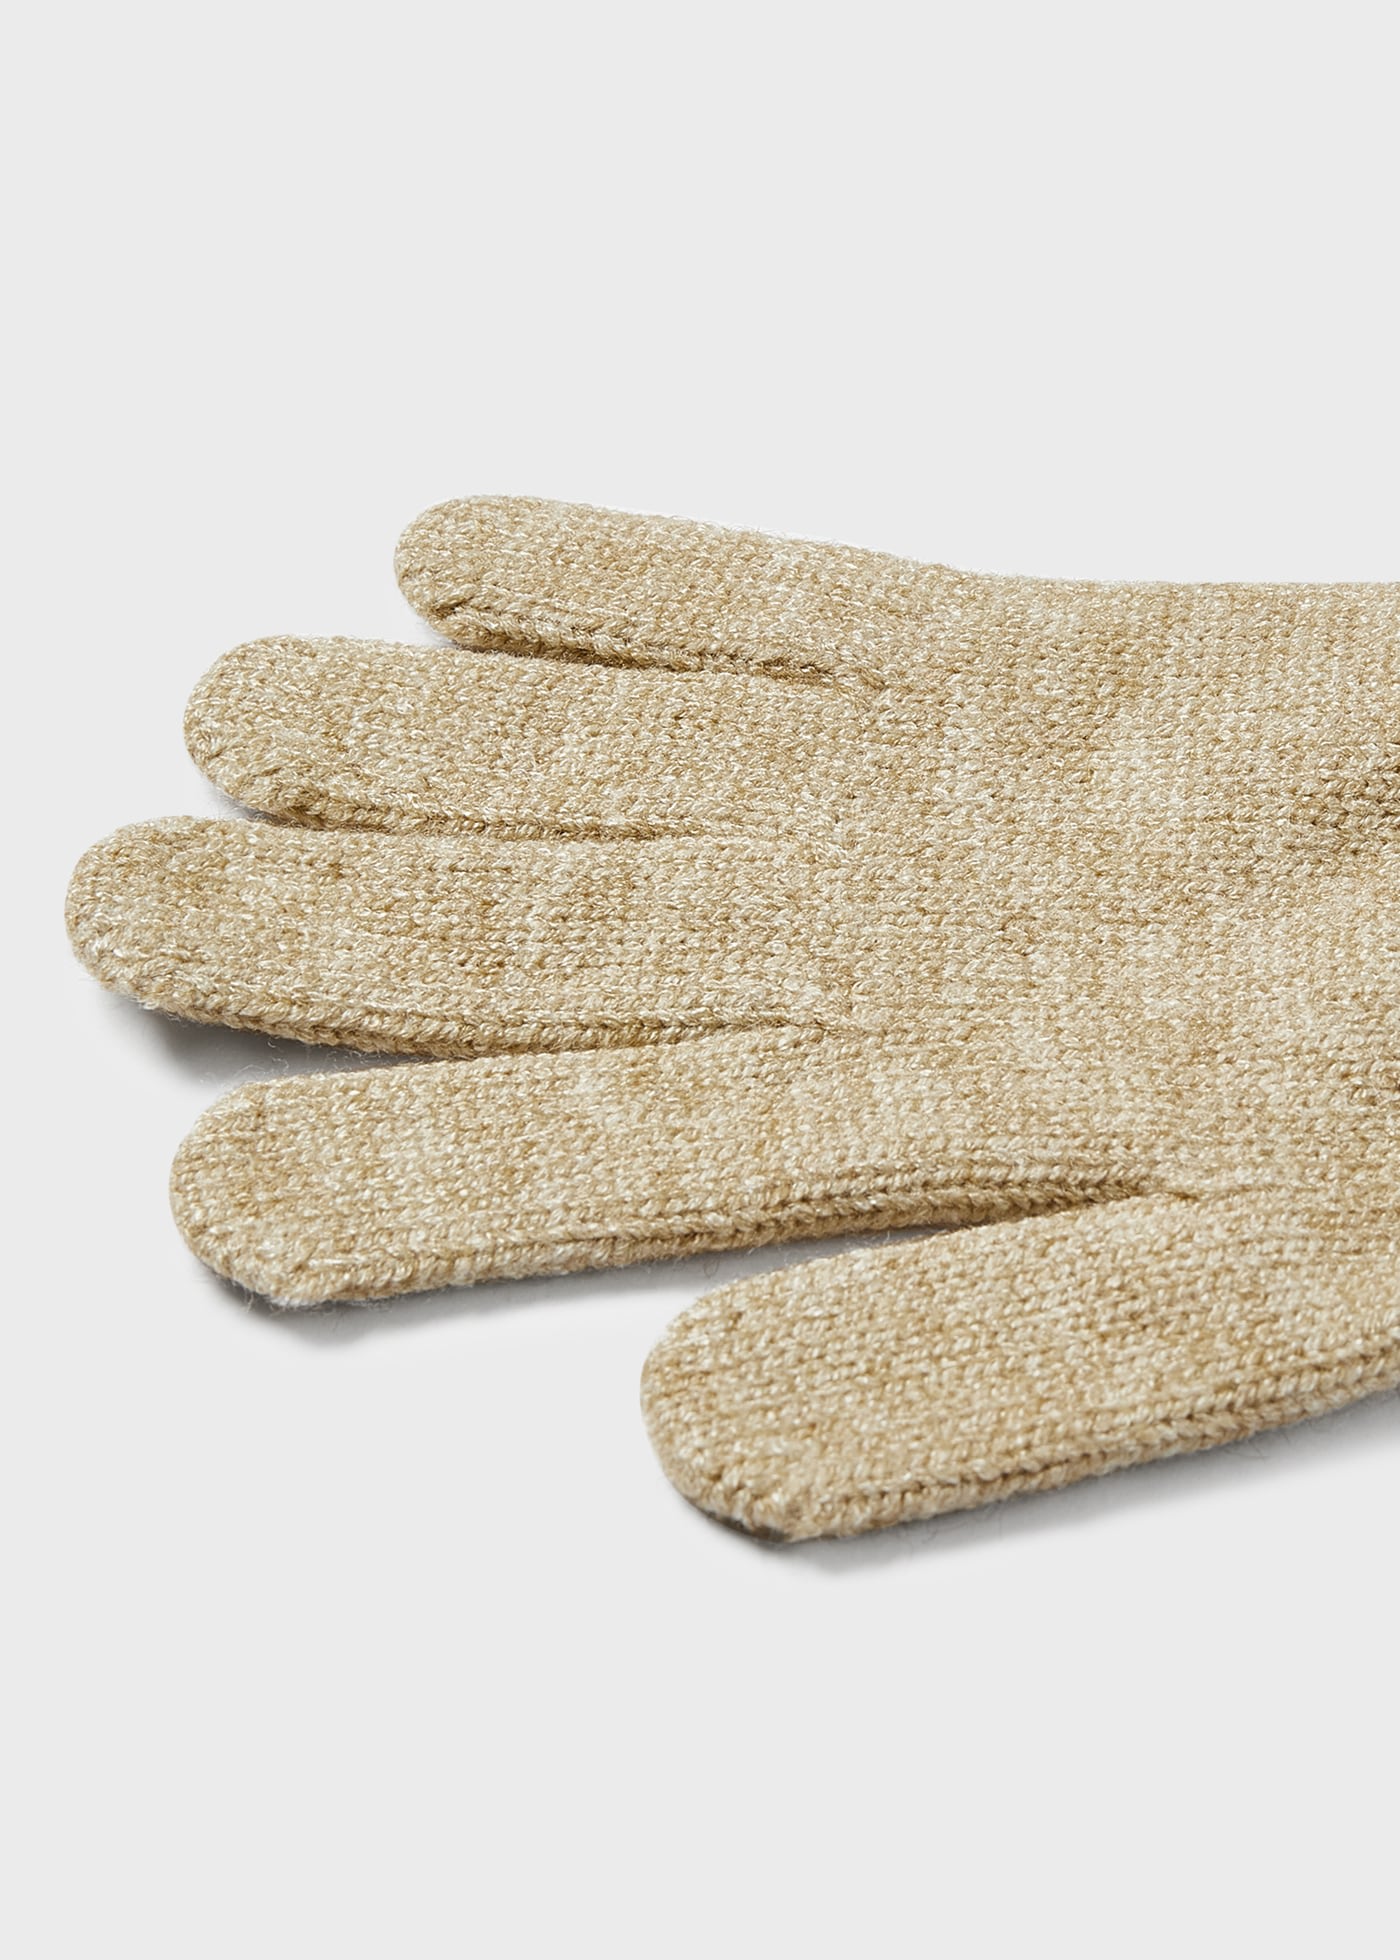 Boy gloves